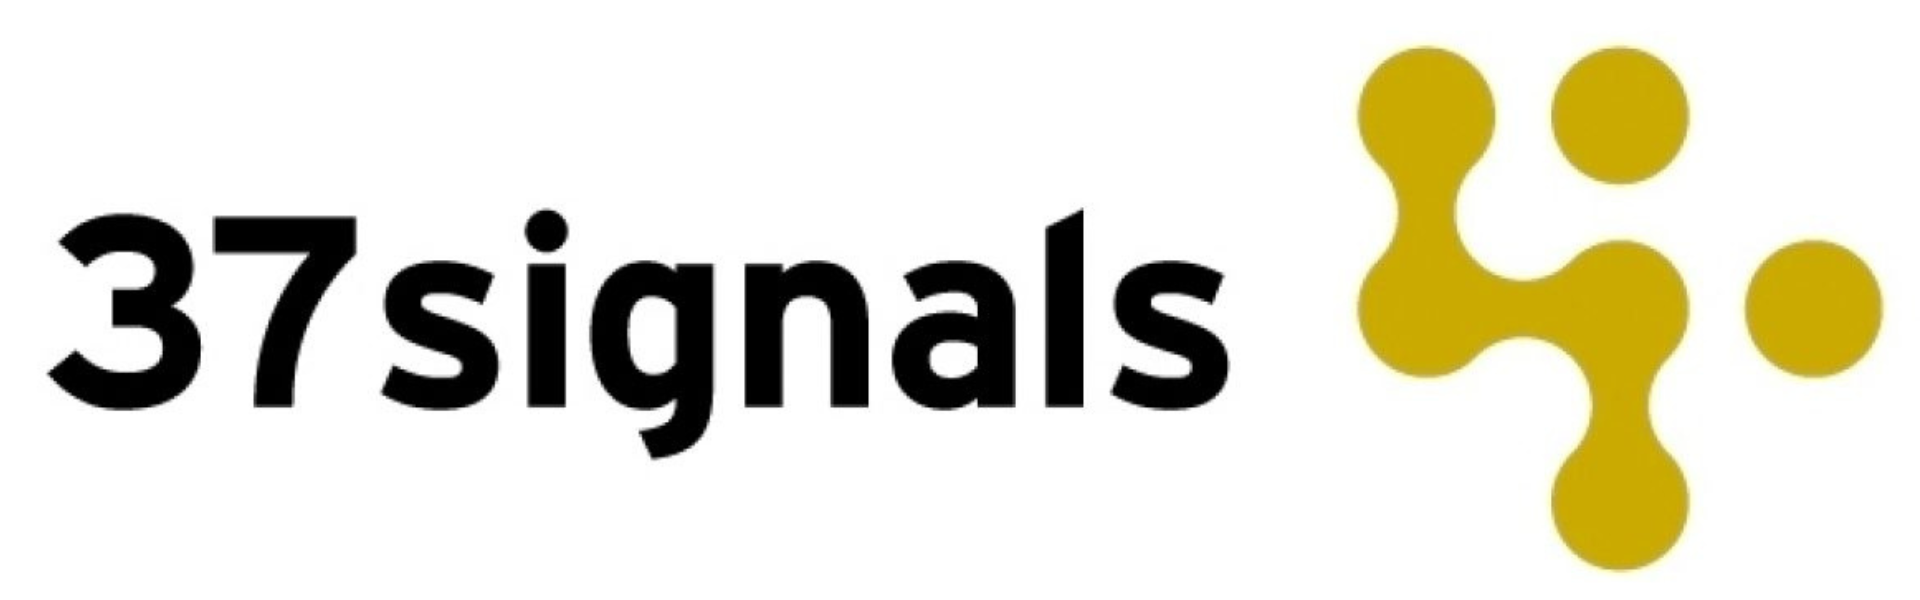 37signals_logo